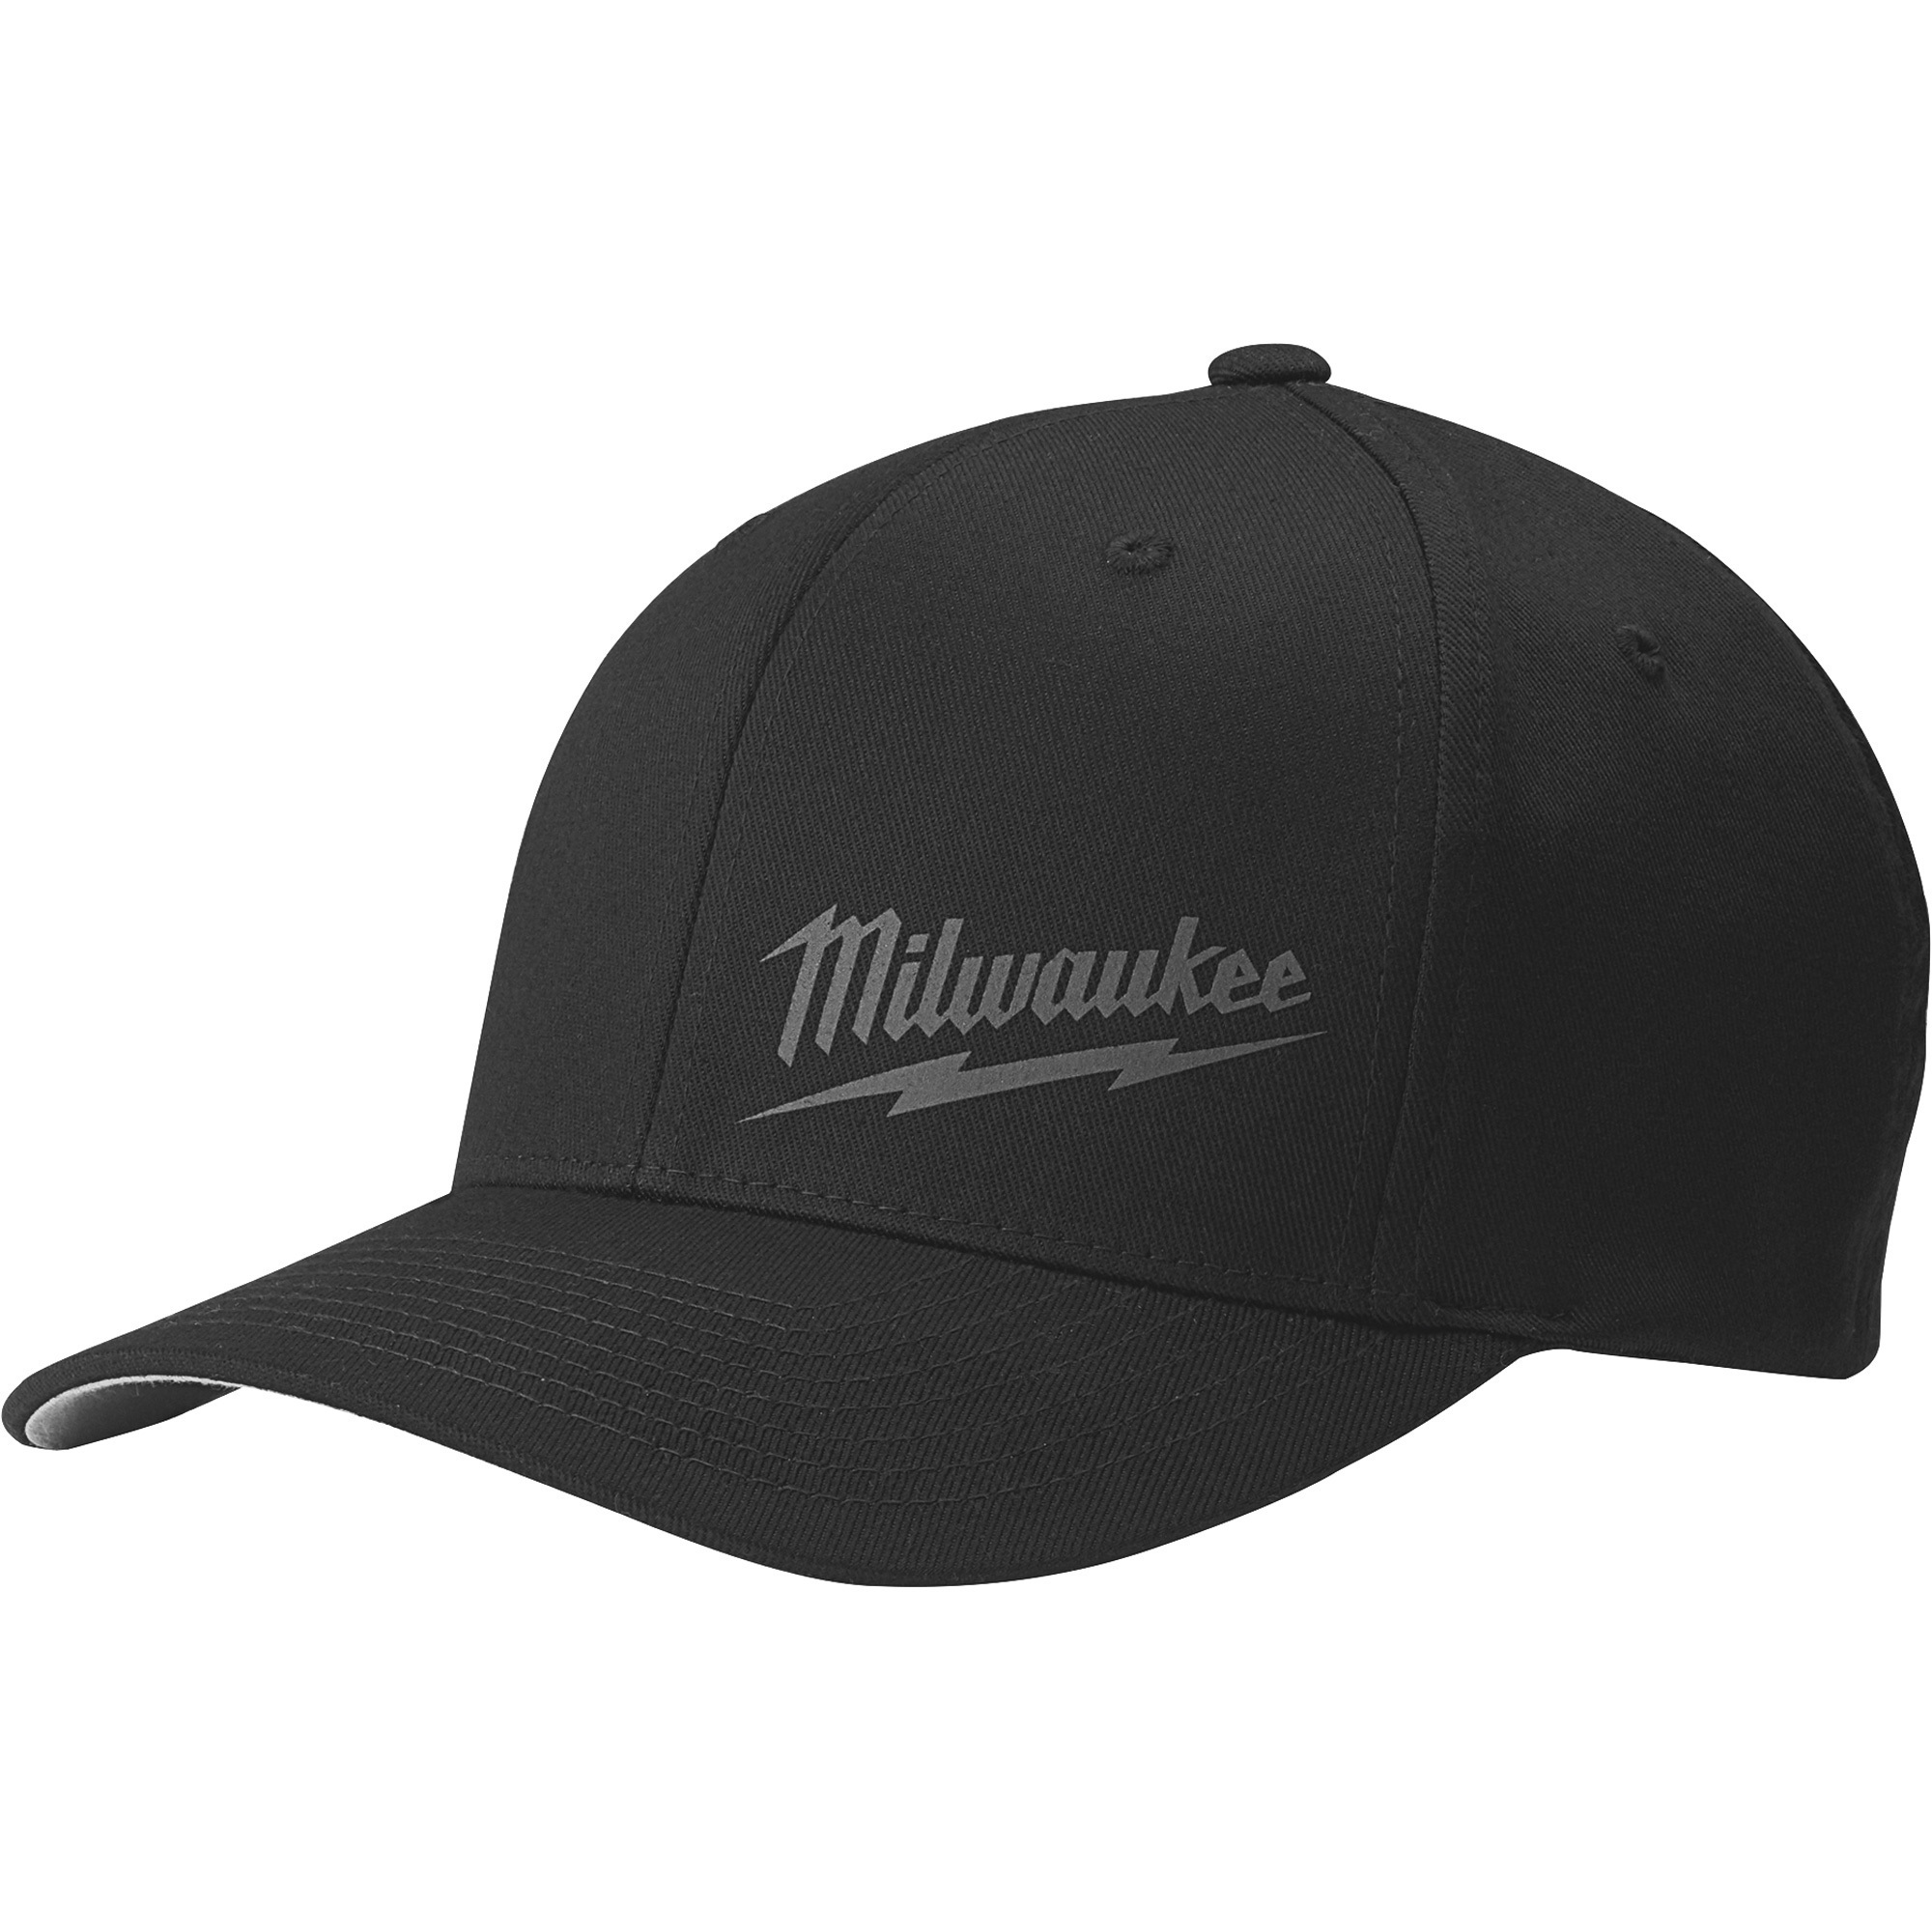 Milwaukee Men's FLEXFIT Fitted Hat, Black, L/XL, Model 504B-LXL